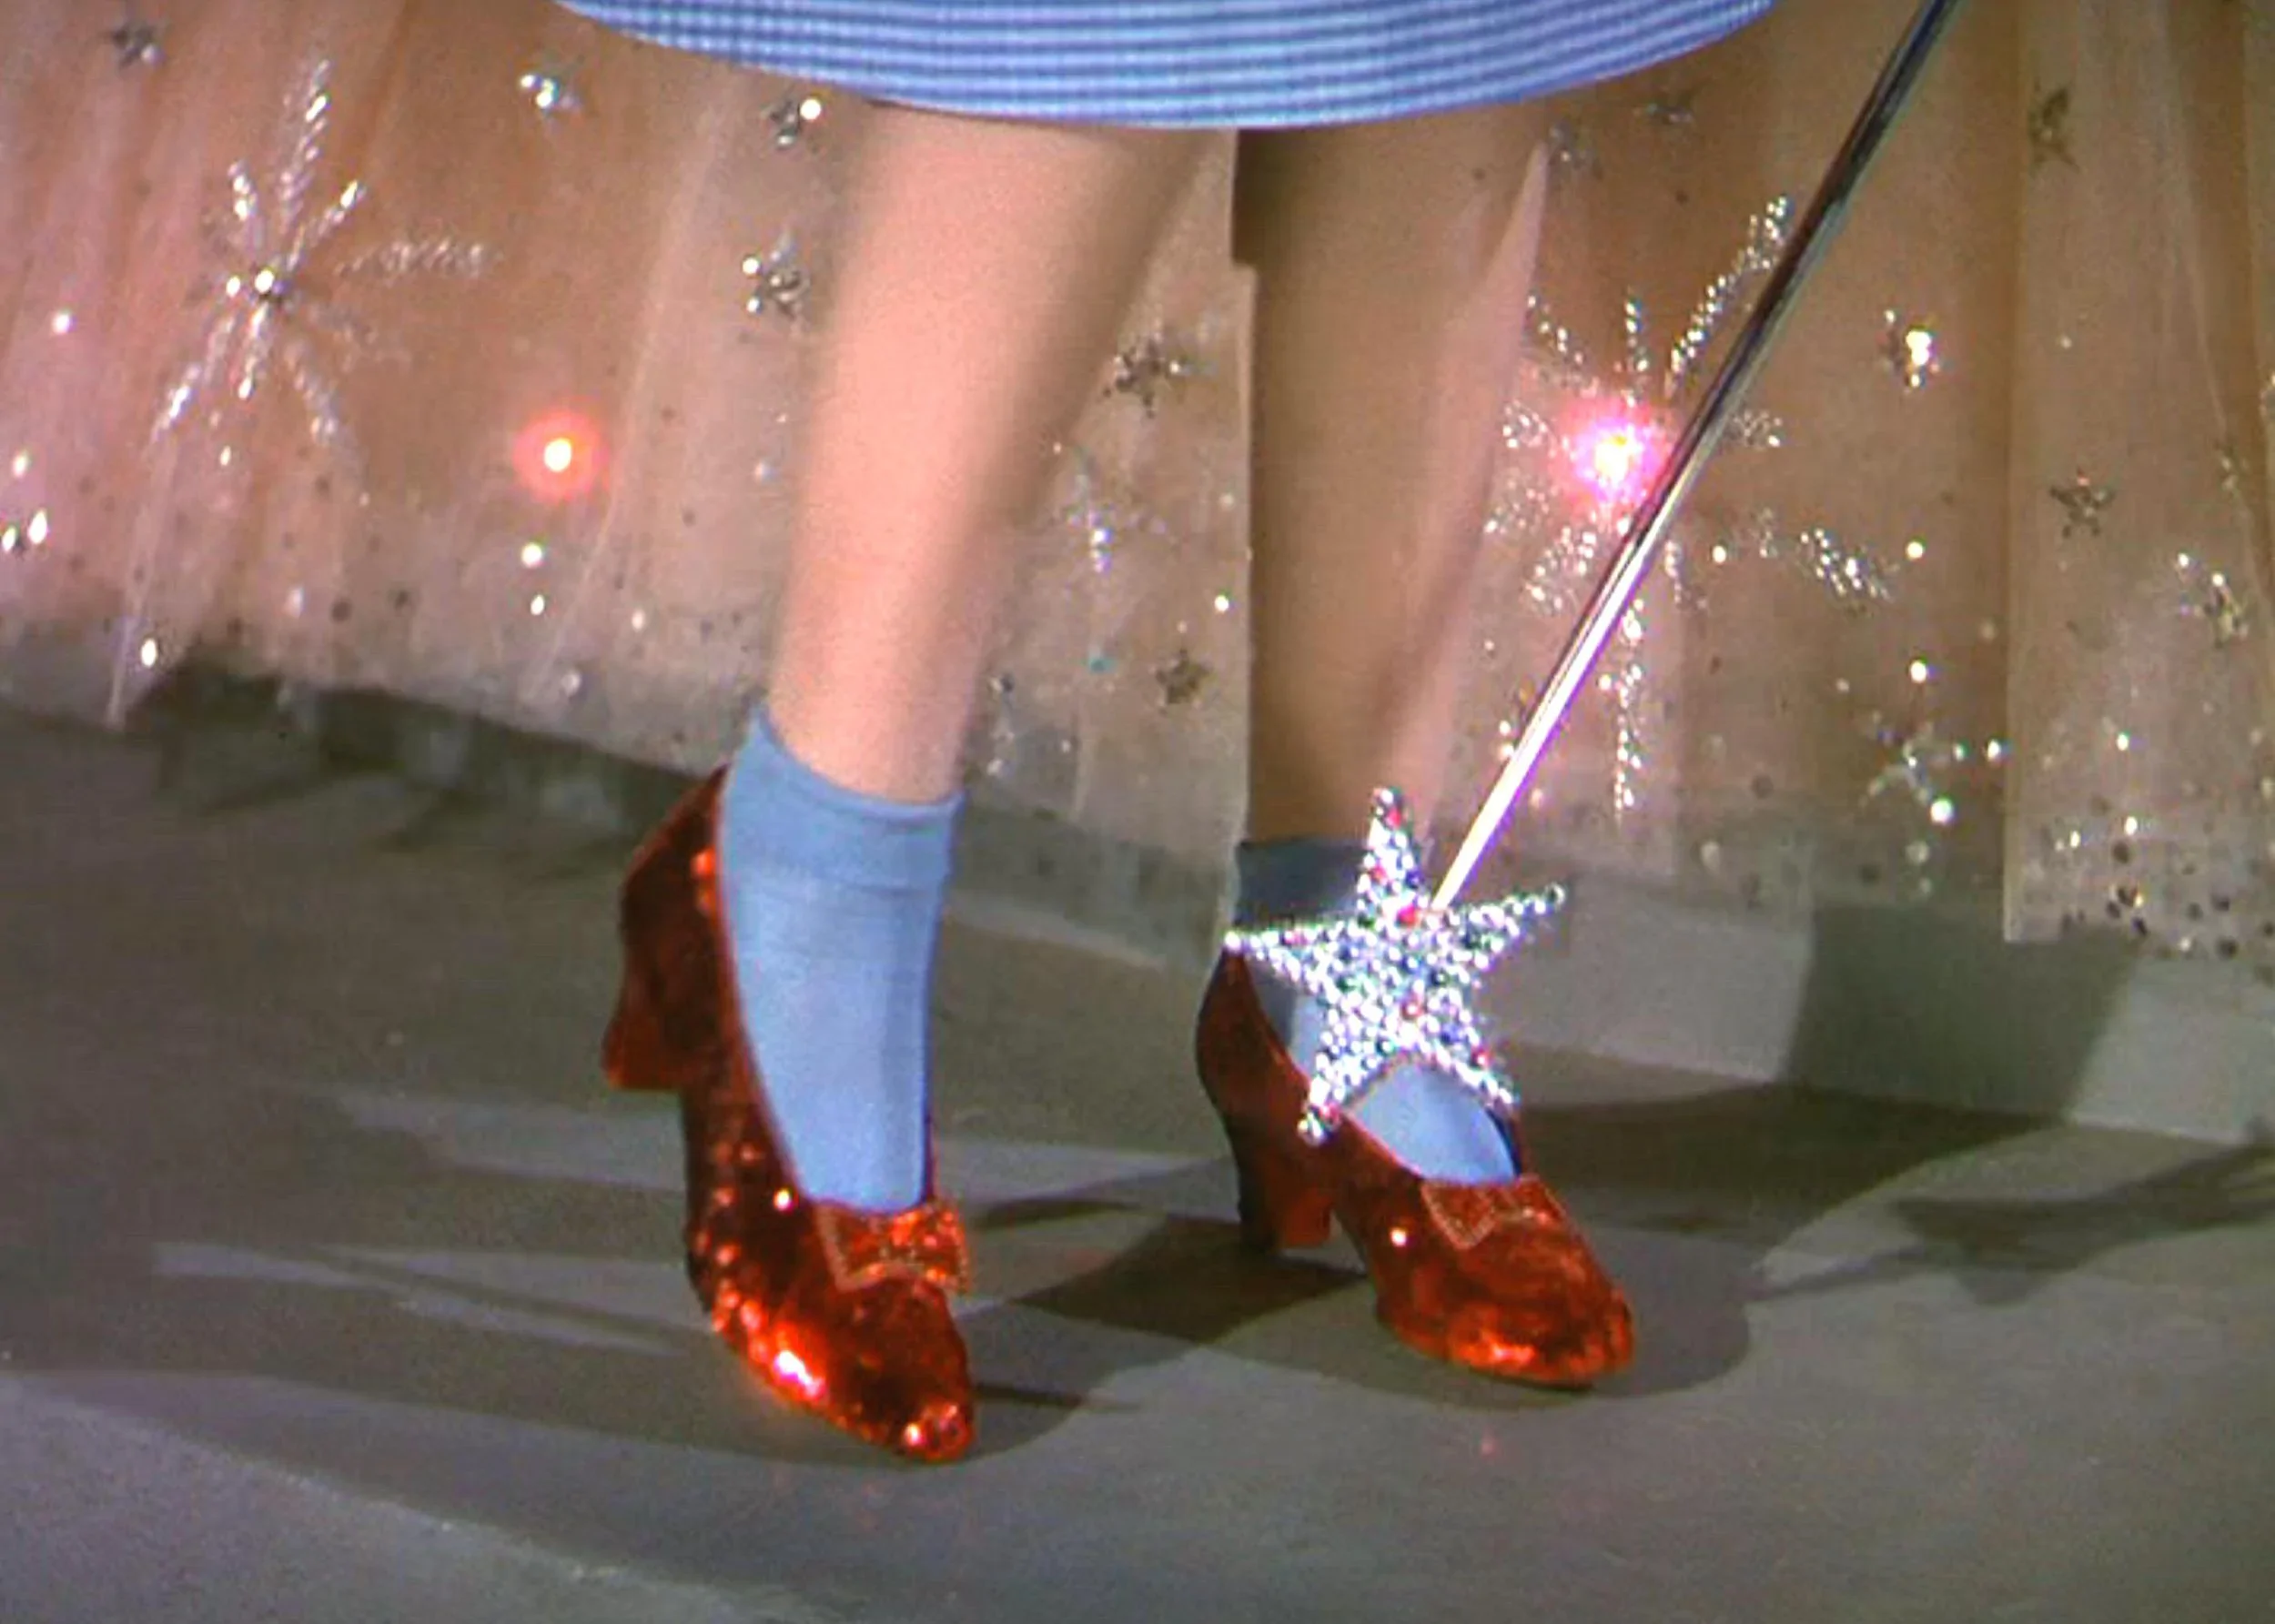 Rubinowe pantofle Judy Garland  w drodze na aukcję